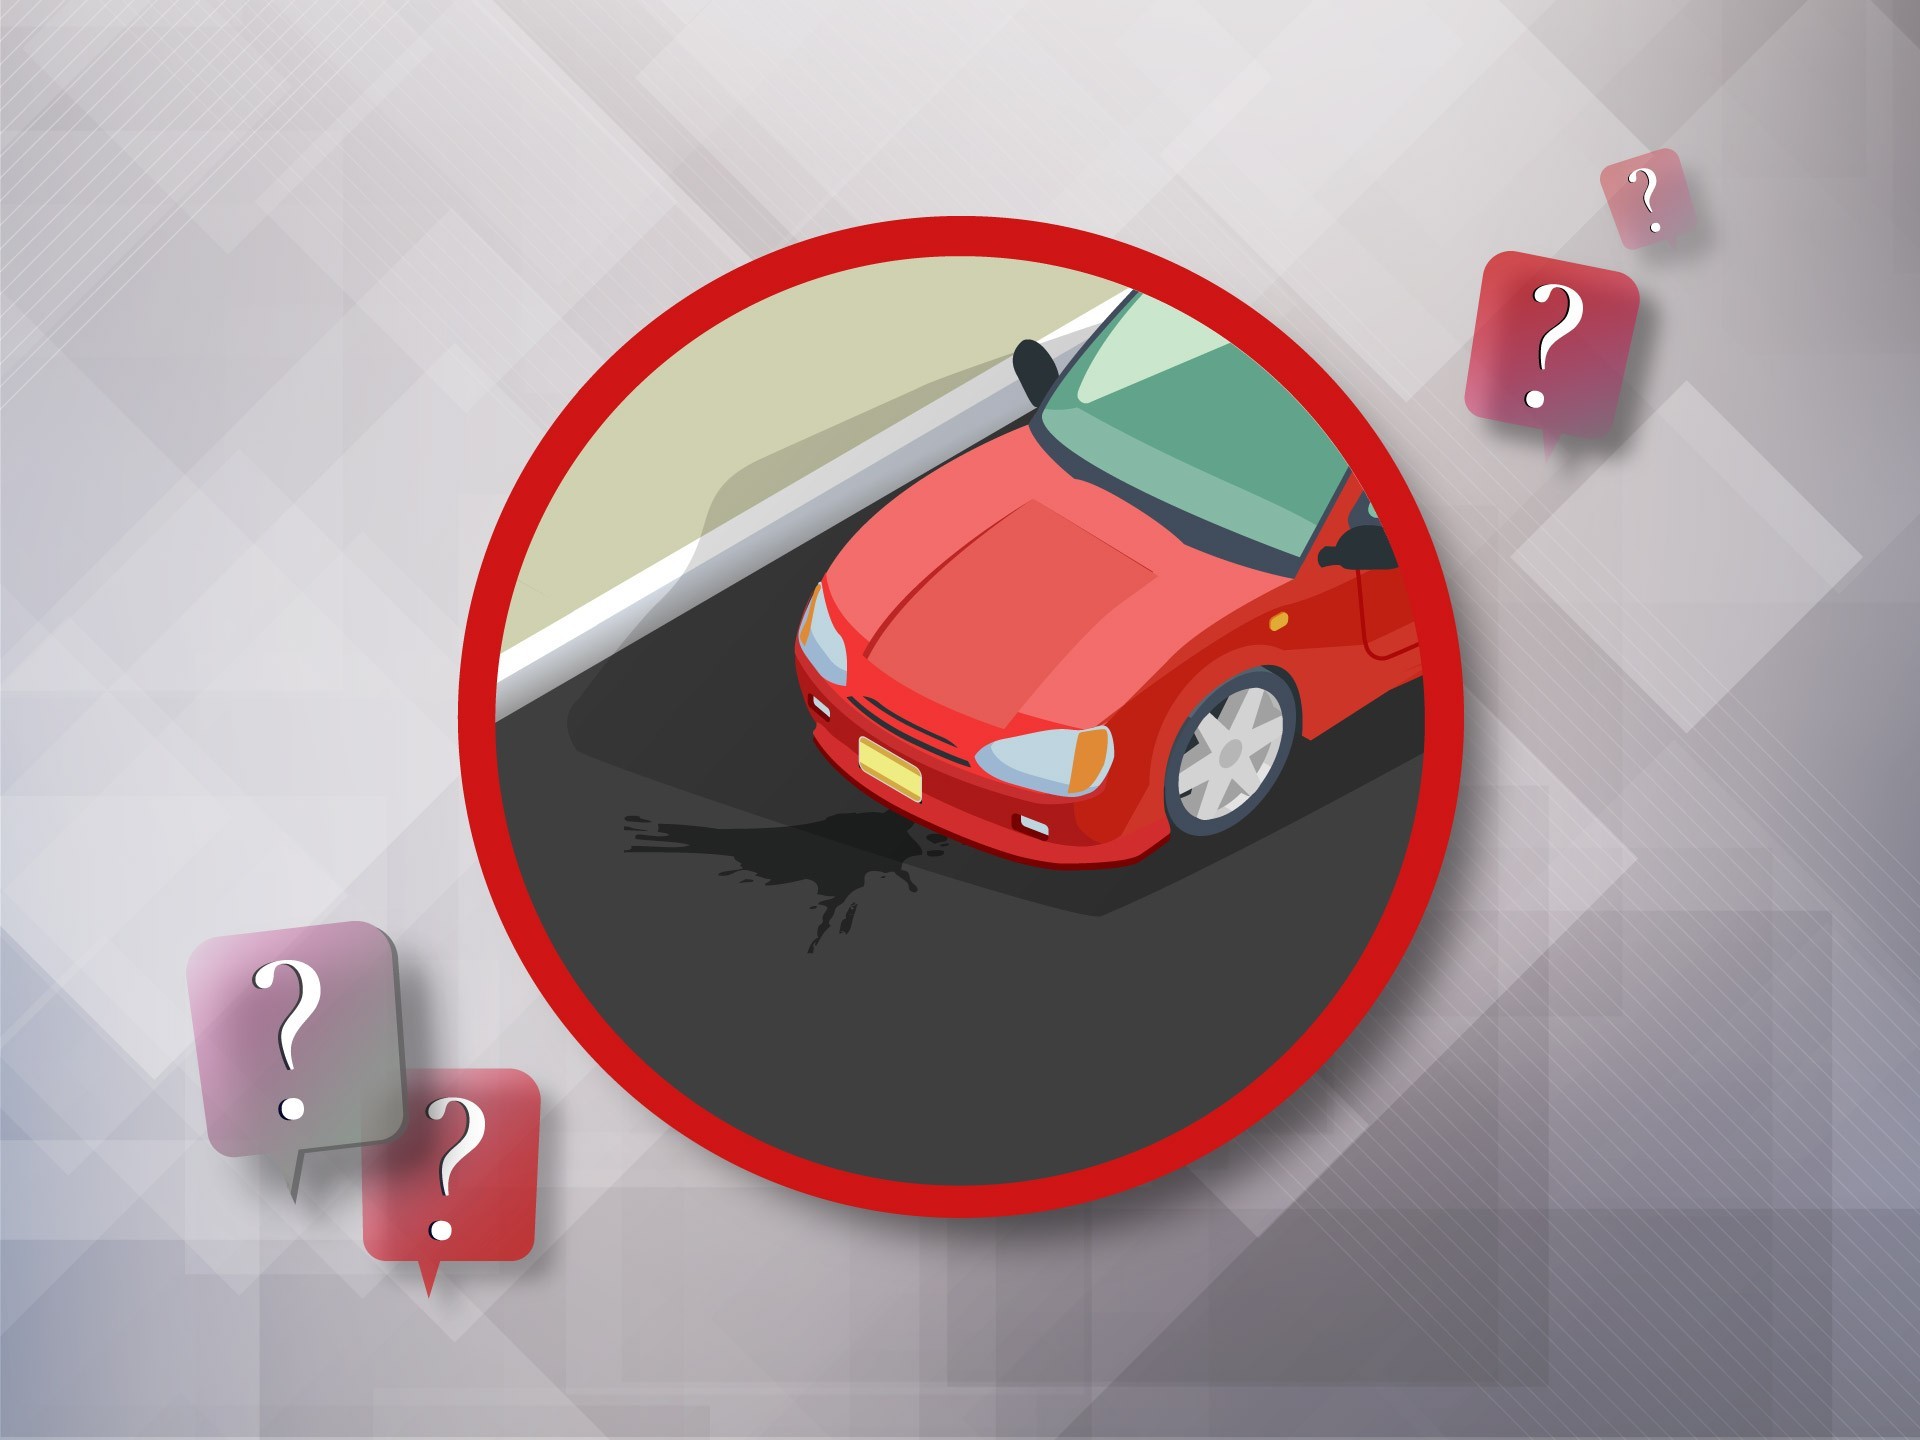 Безопасно ли управлять автомобилем, если из автомобиля вытекает трансмиссионная жидкость?